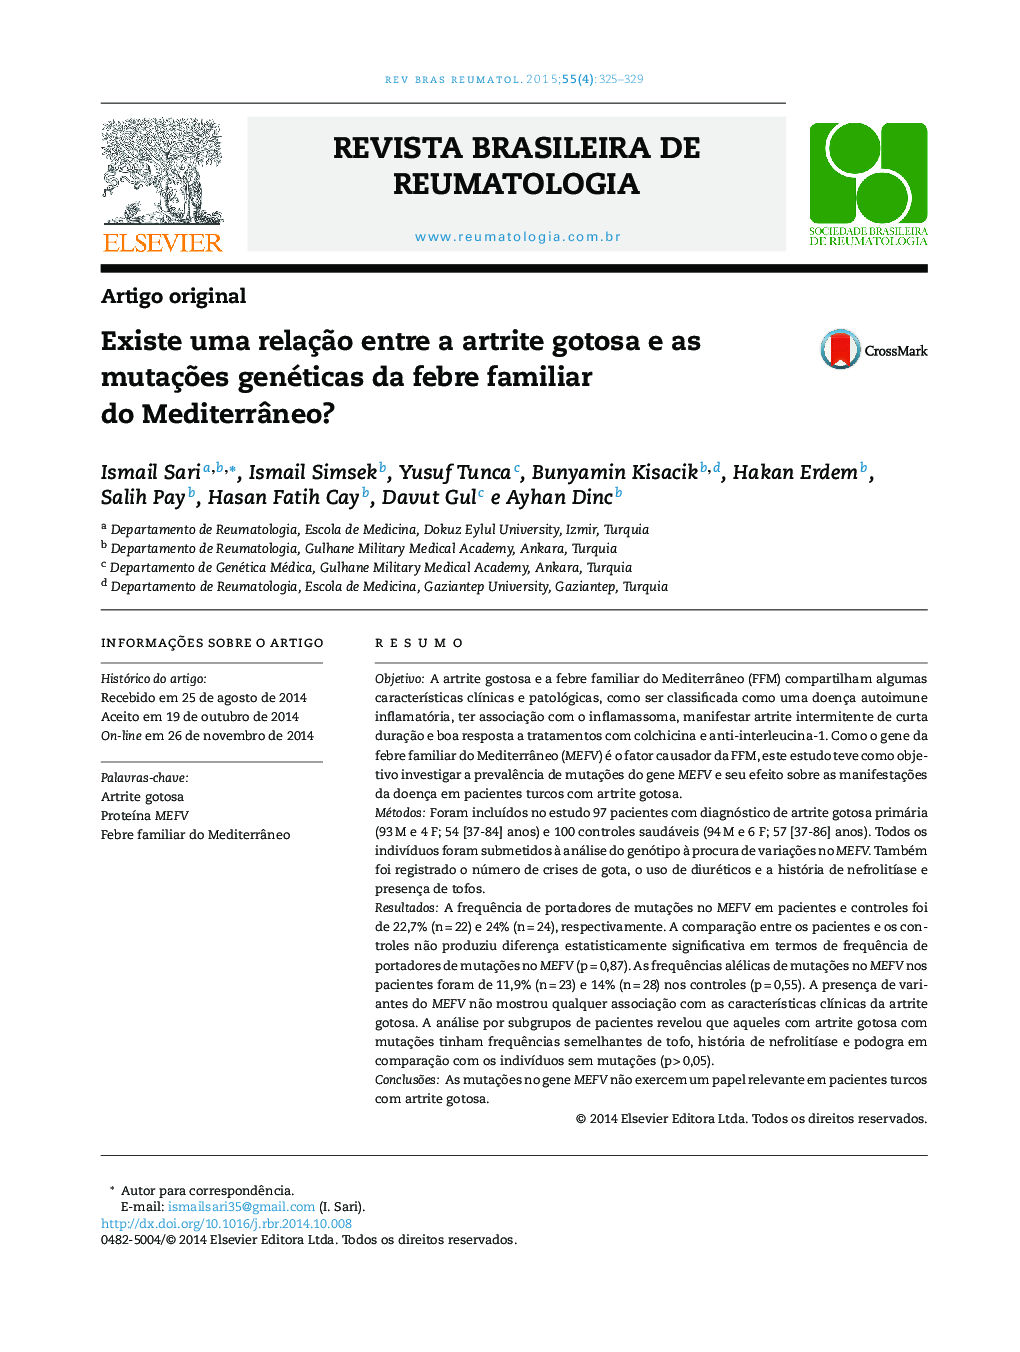 Existe uma relação entre a artrite gotosa e as mutações genéticas da febre familiar do Mediterrâneo?